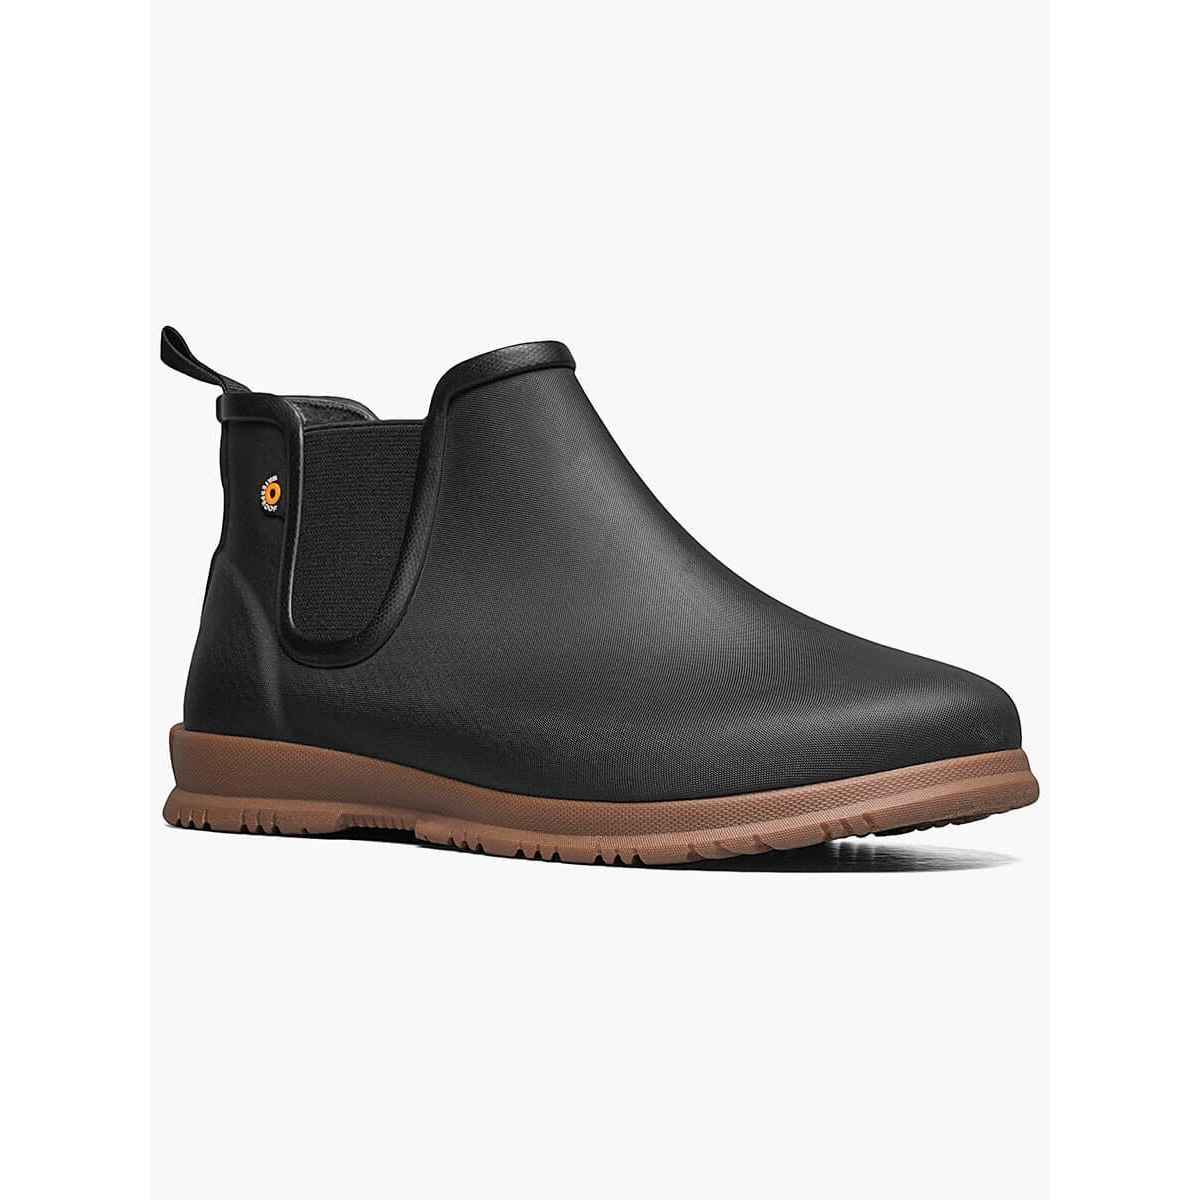 BOGS Women's Sweetpea Waterproof Slip On Rain Boots Black- 72198-001 - BLACK, 9